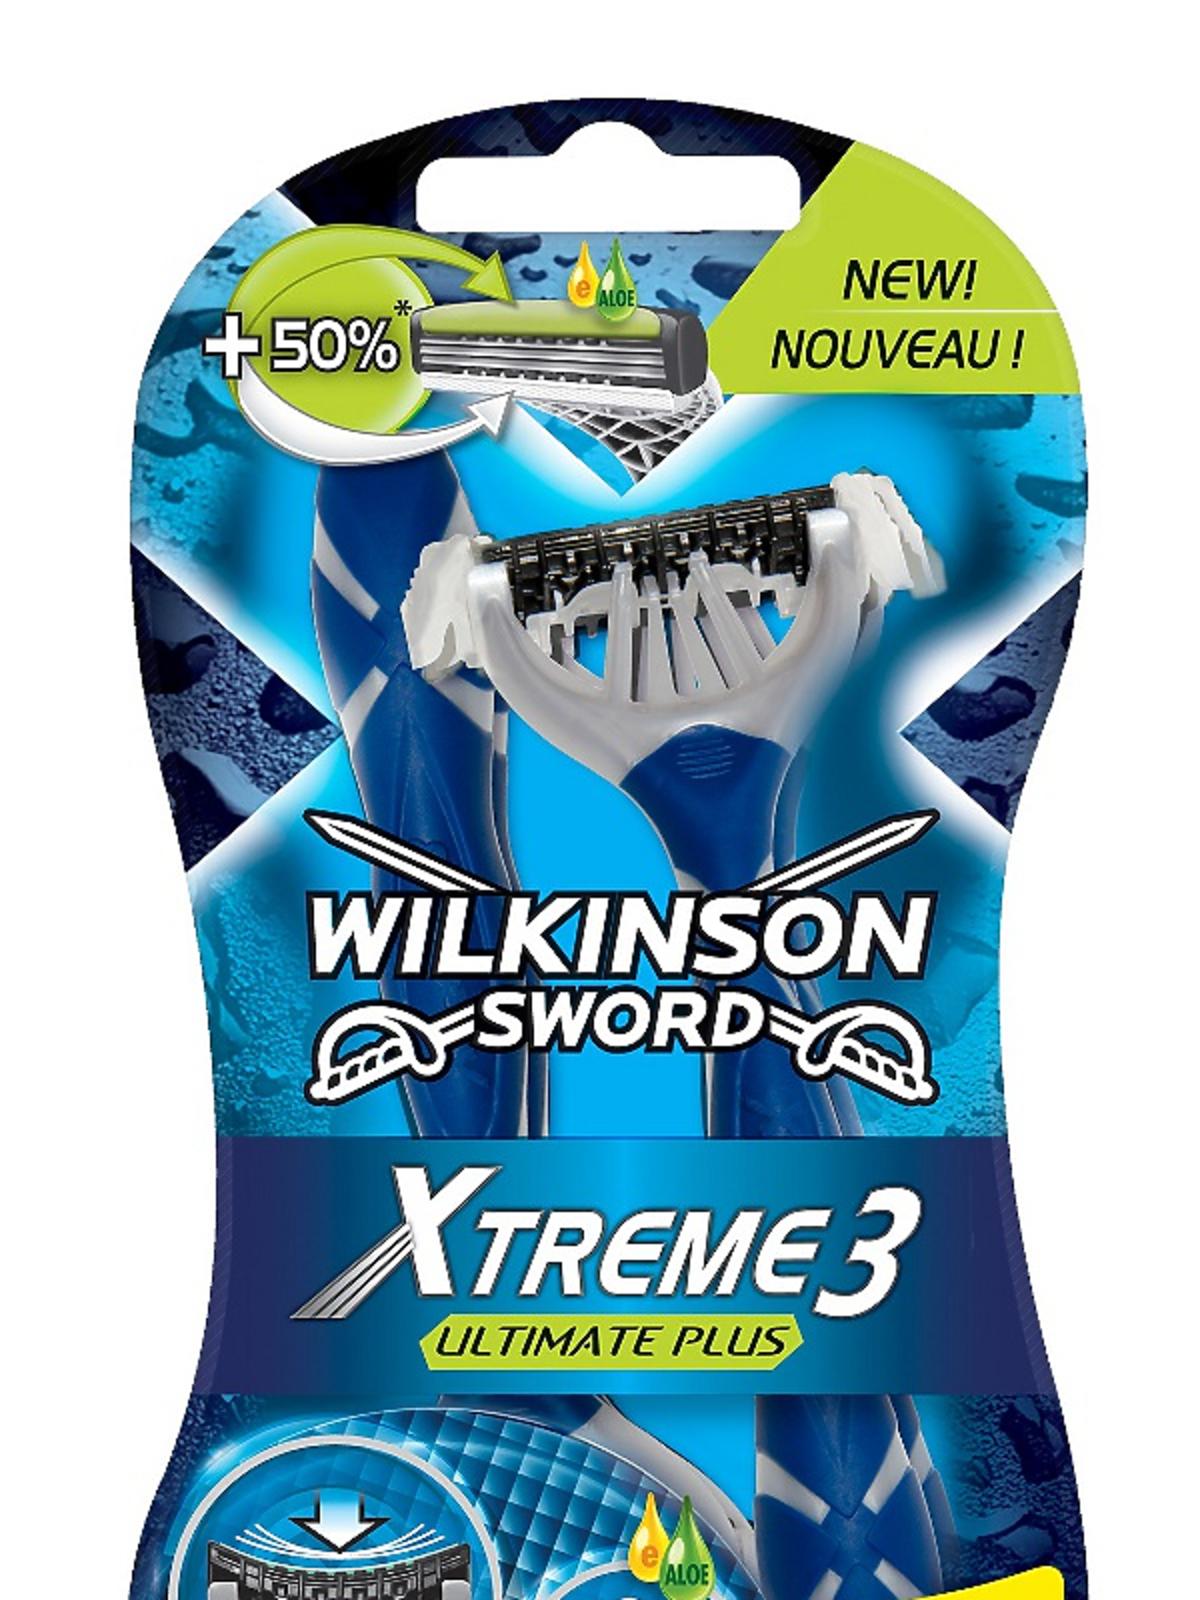 Maszynka do golenia Xtreme3 Ultimate Plus Wilkinson, ok. 15-20zł